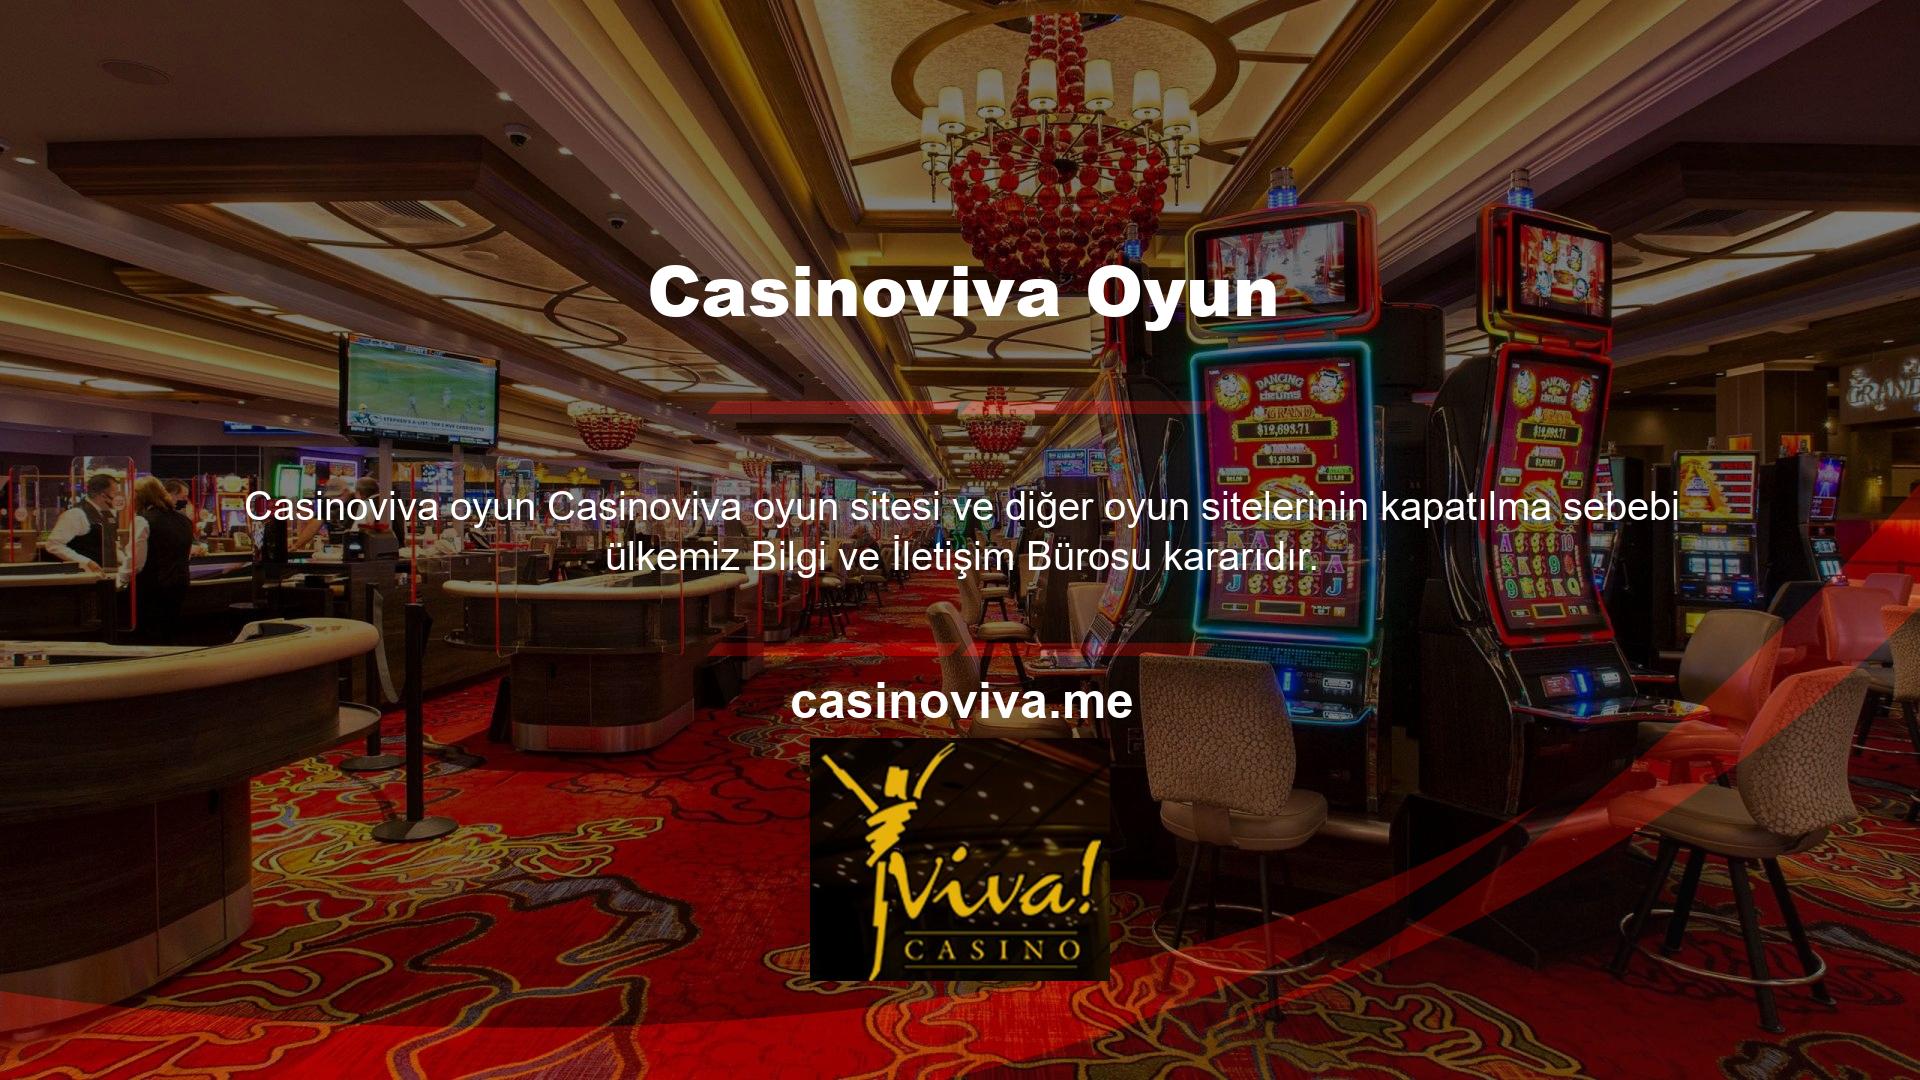 Casinoviva oyun sitesi ve diğer oyun sitelerinin kapatılma sebebi ülkemiz bilgi ve iletişim daire başkanlığı kararıdır